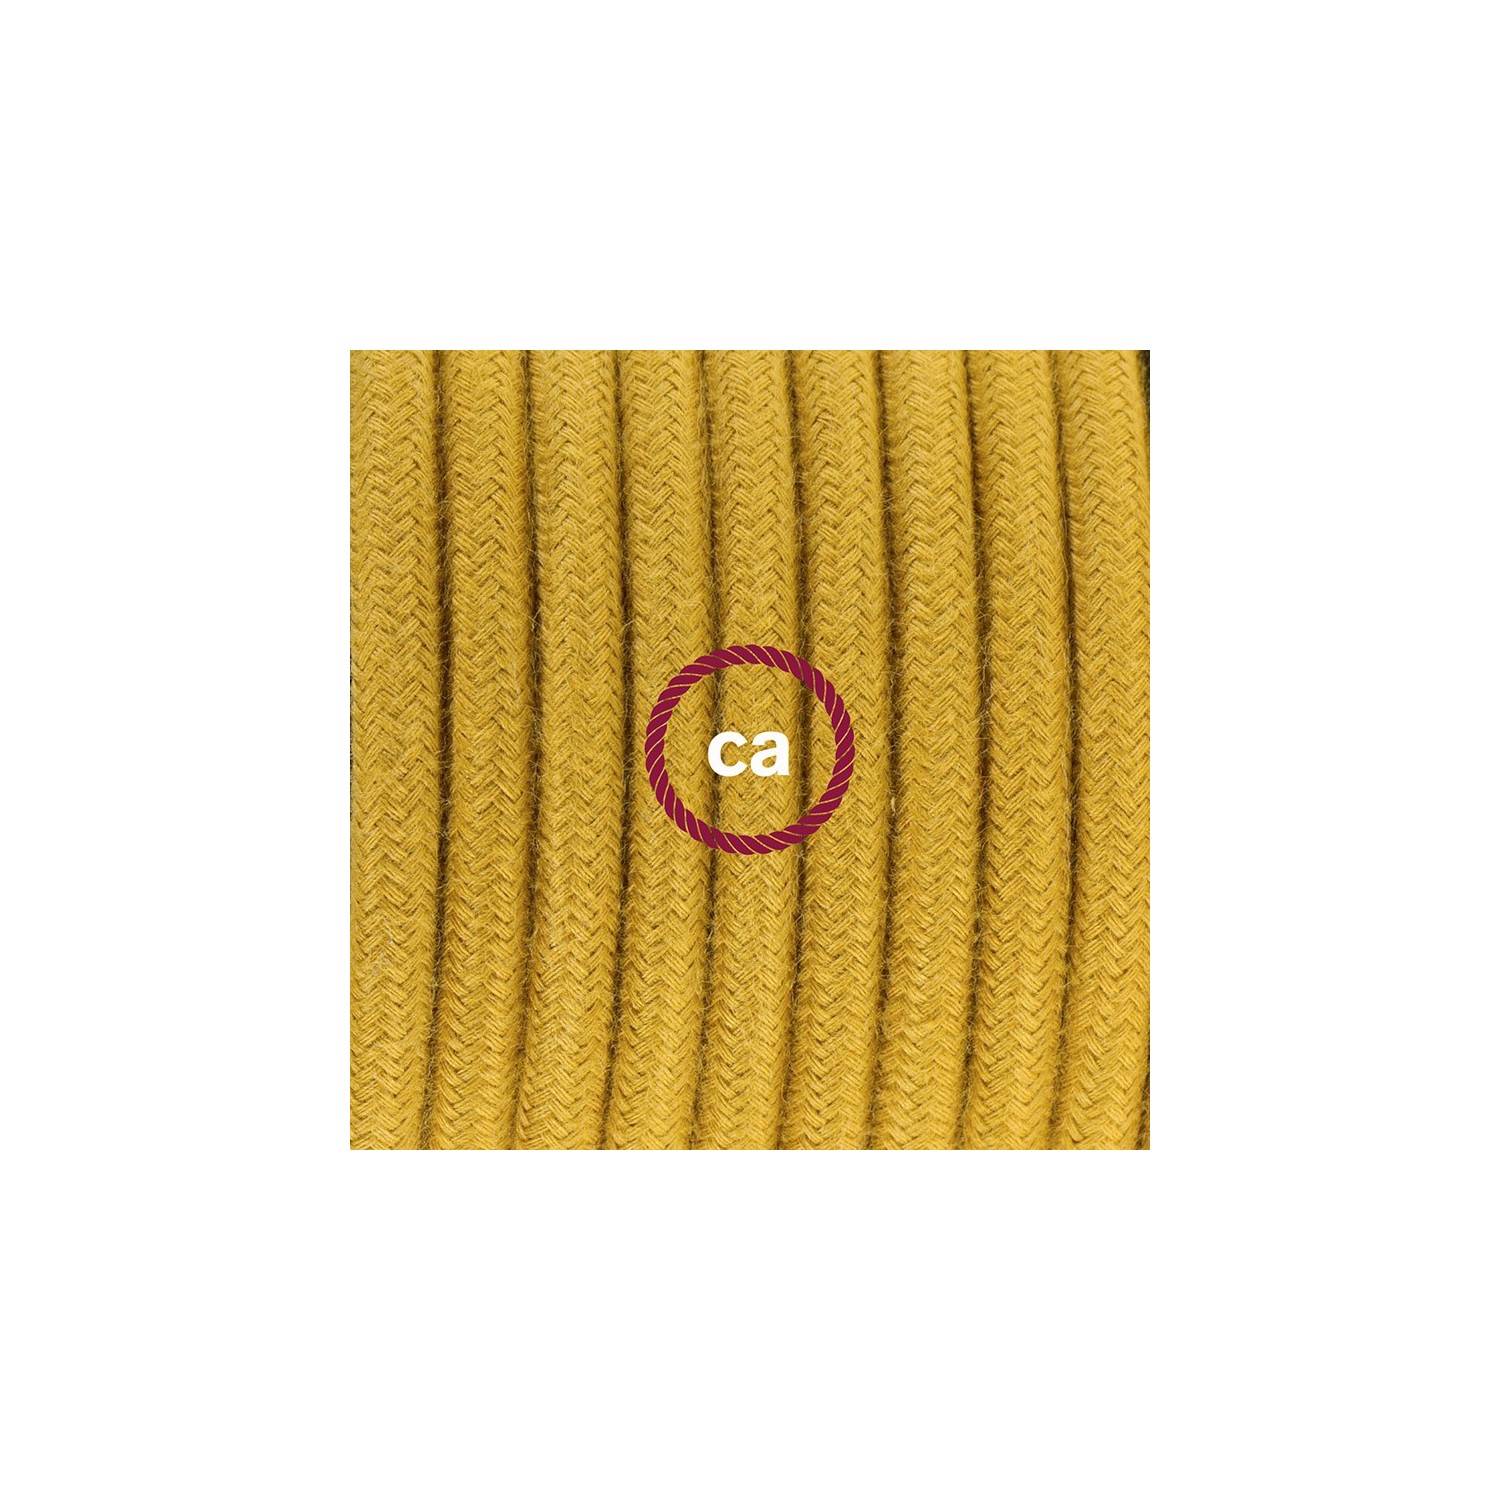 Zuleitung für Tischleuchten RC31 Goldener Honig Baumwolle 1,80 m. Wählen Sie aus drei Farben bei Schalter und Stecke.